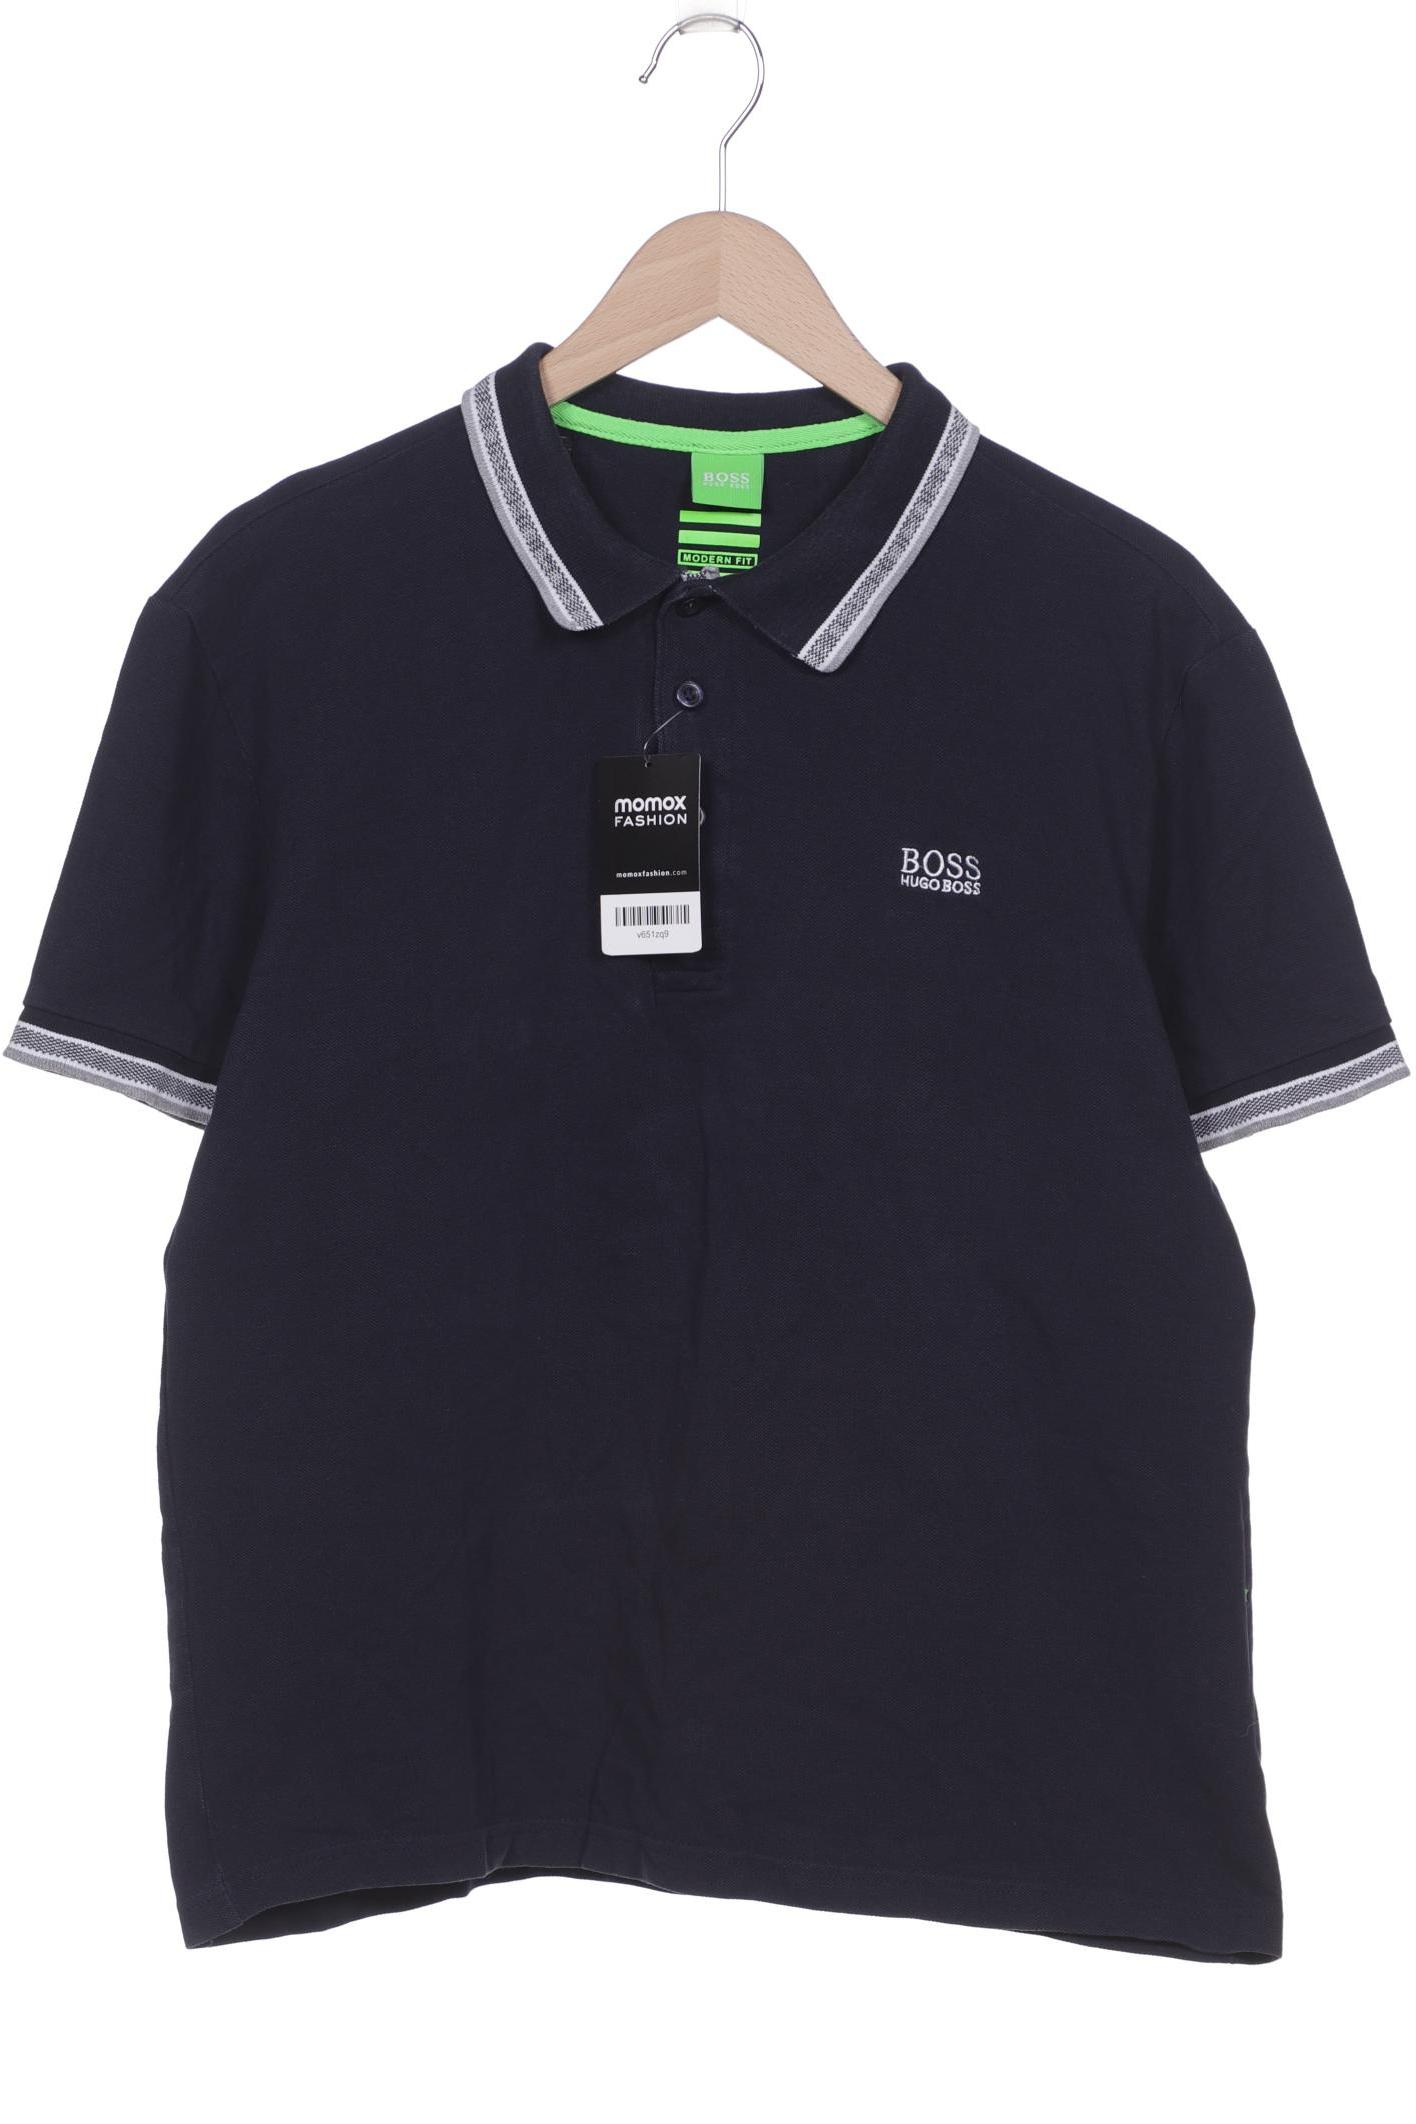 Boss Green Herren Poloshirt, marineblau, Gr. 54 von BOSS Green